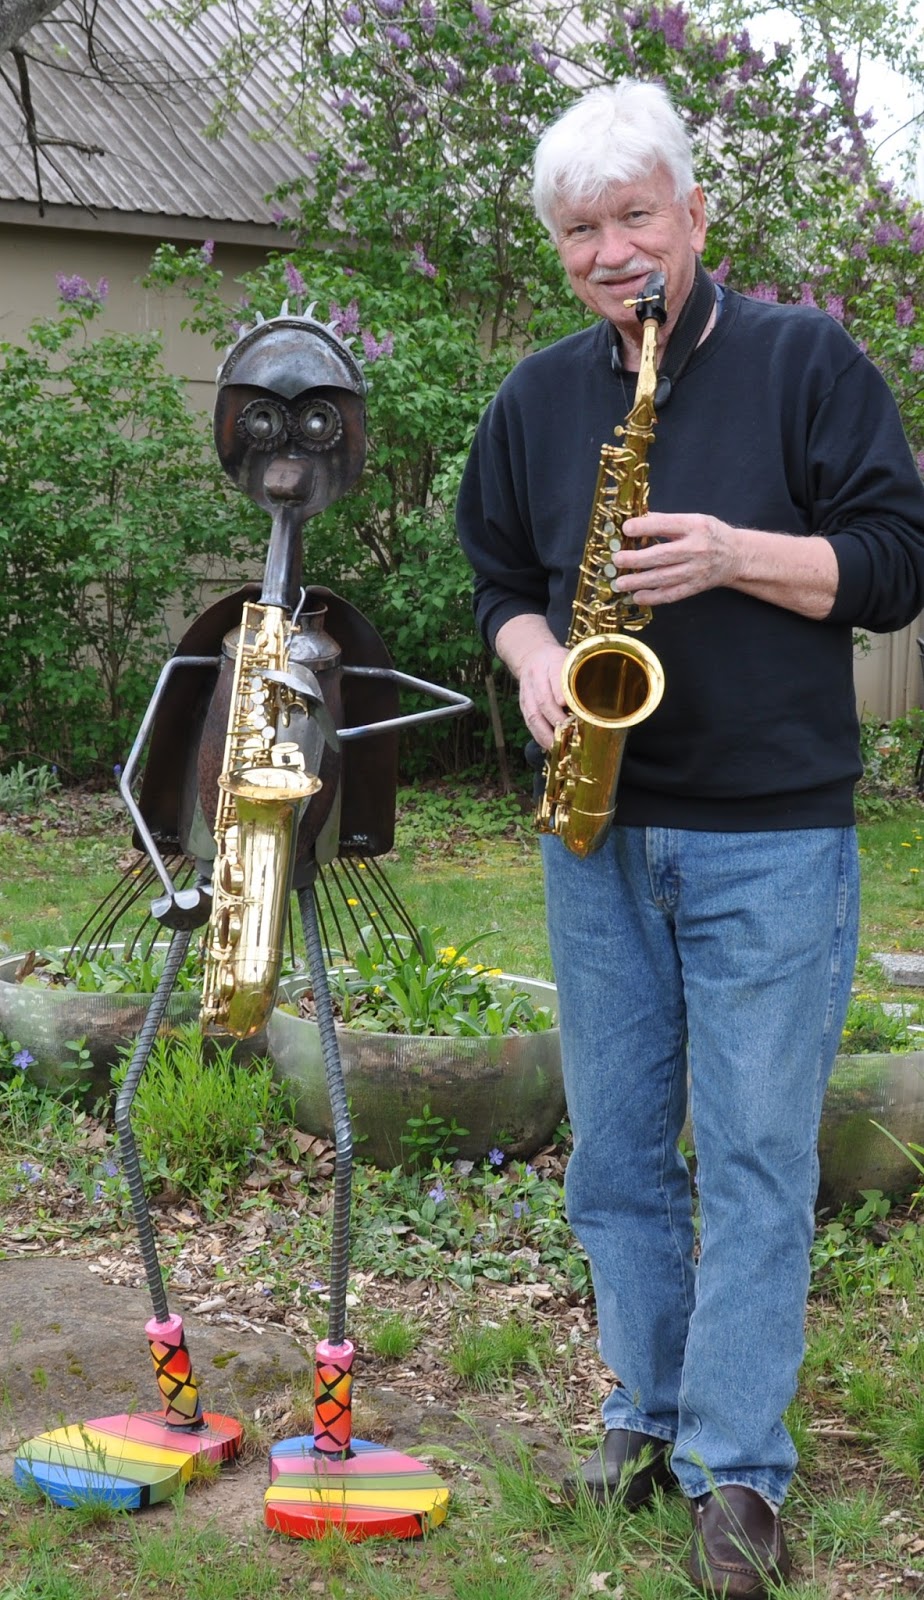 Mike Stillman & friend on sax